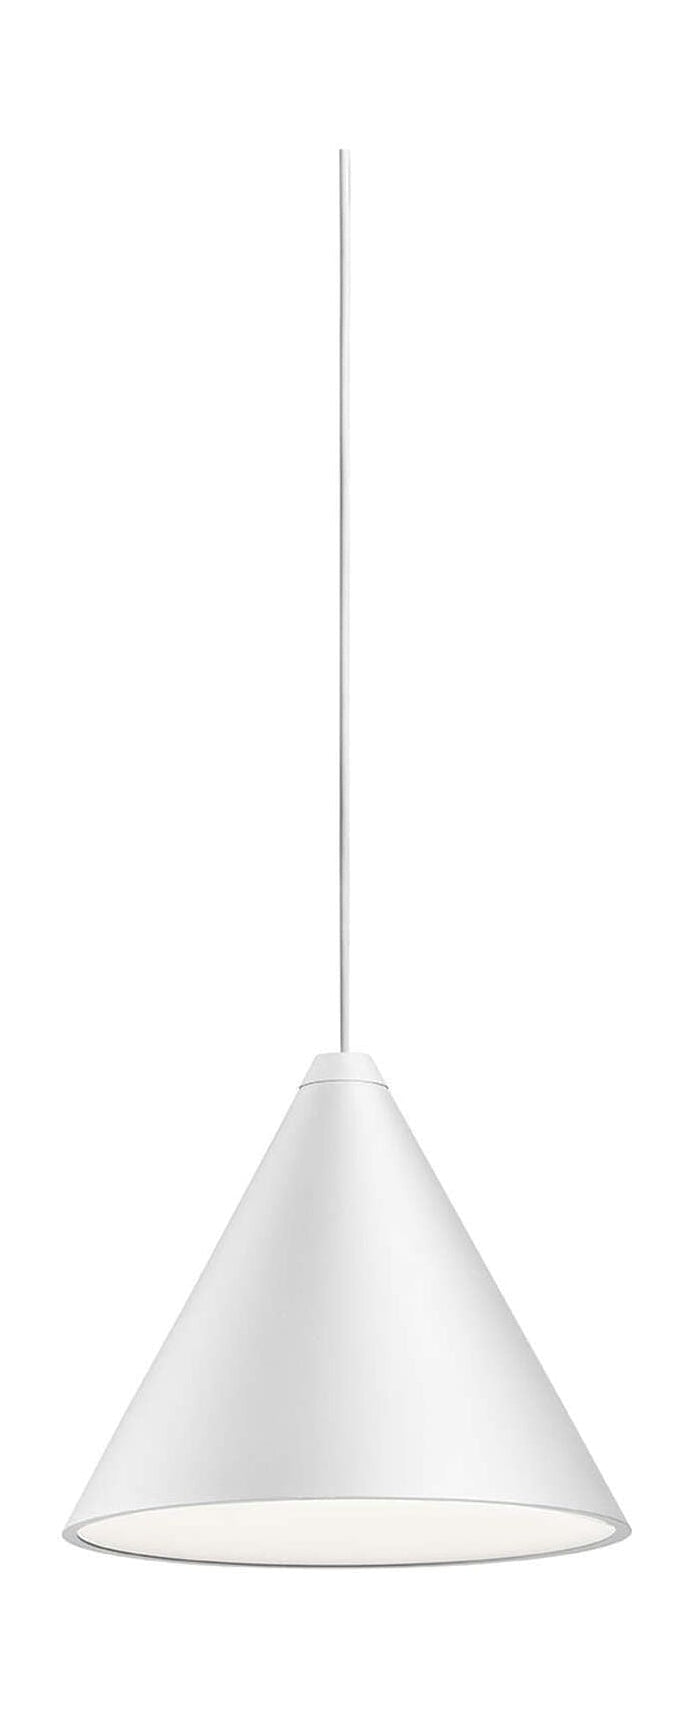 Flos String Light Cone Pendant med spjäll 12 m, vit